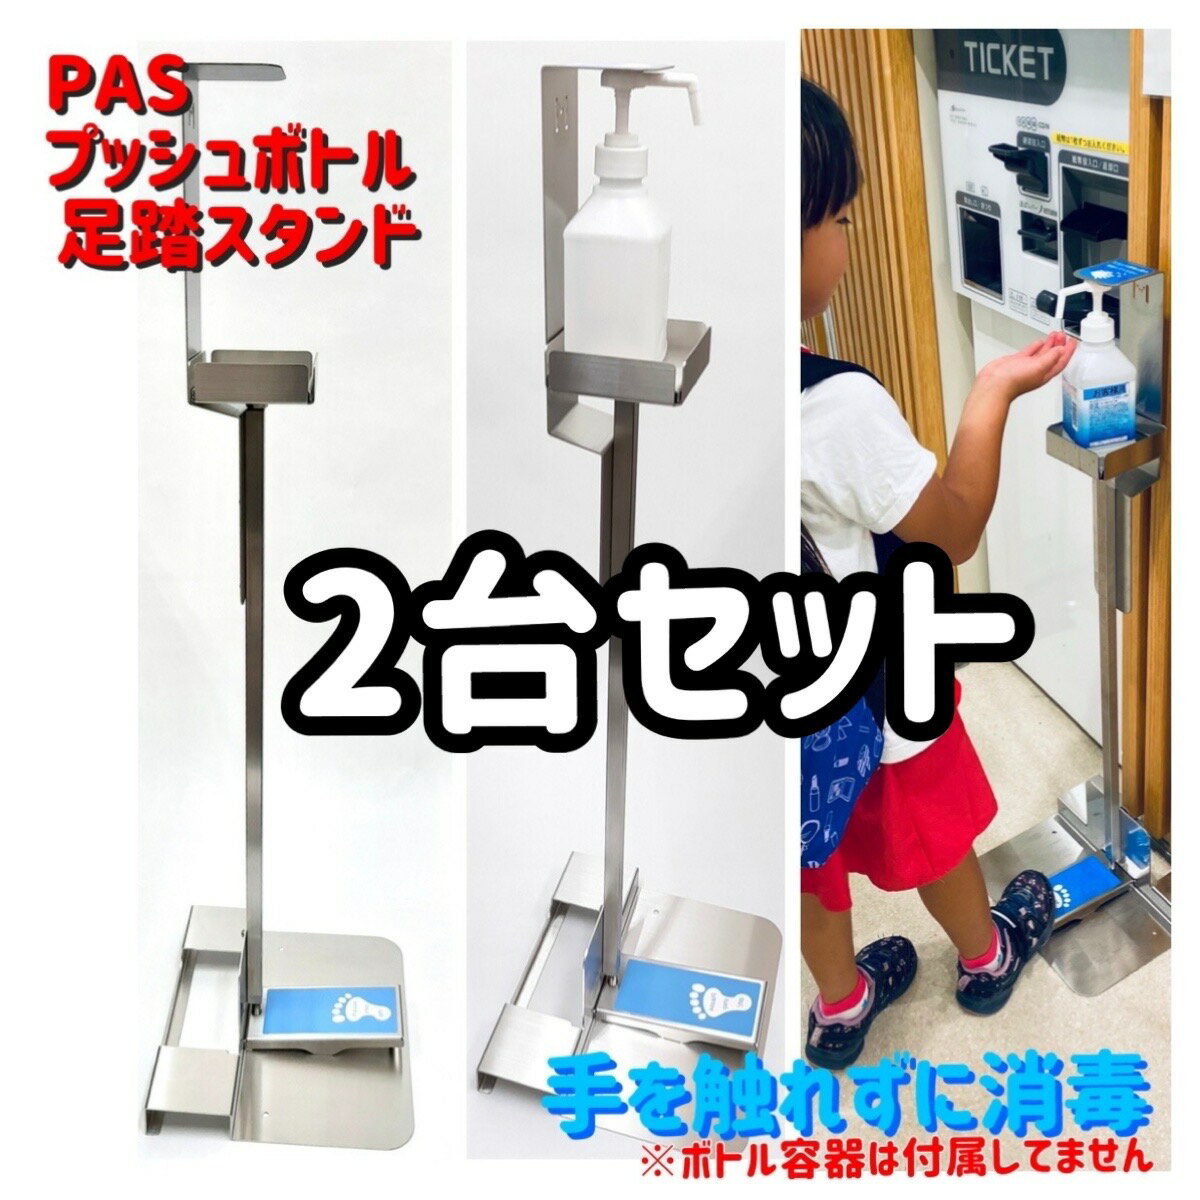 【2台セット】プッシュボトル足踏スタンド【PAS-001-S